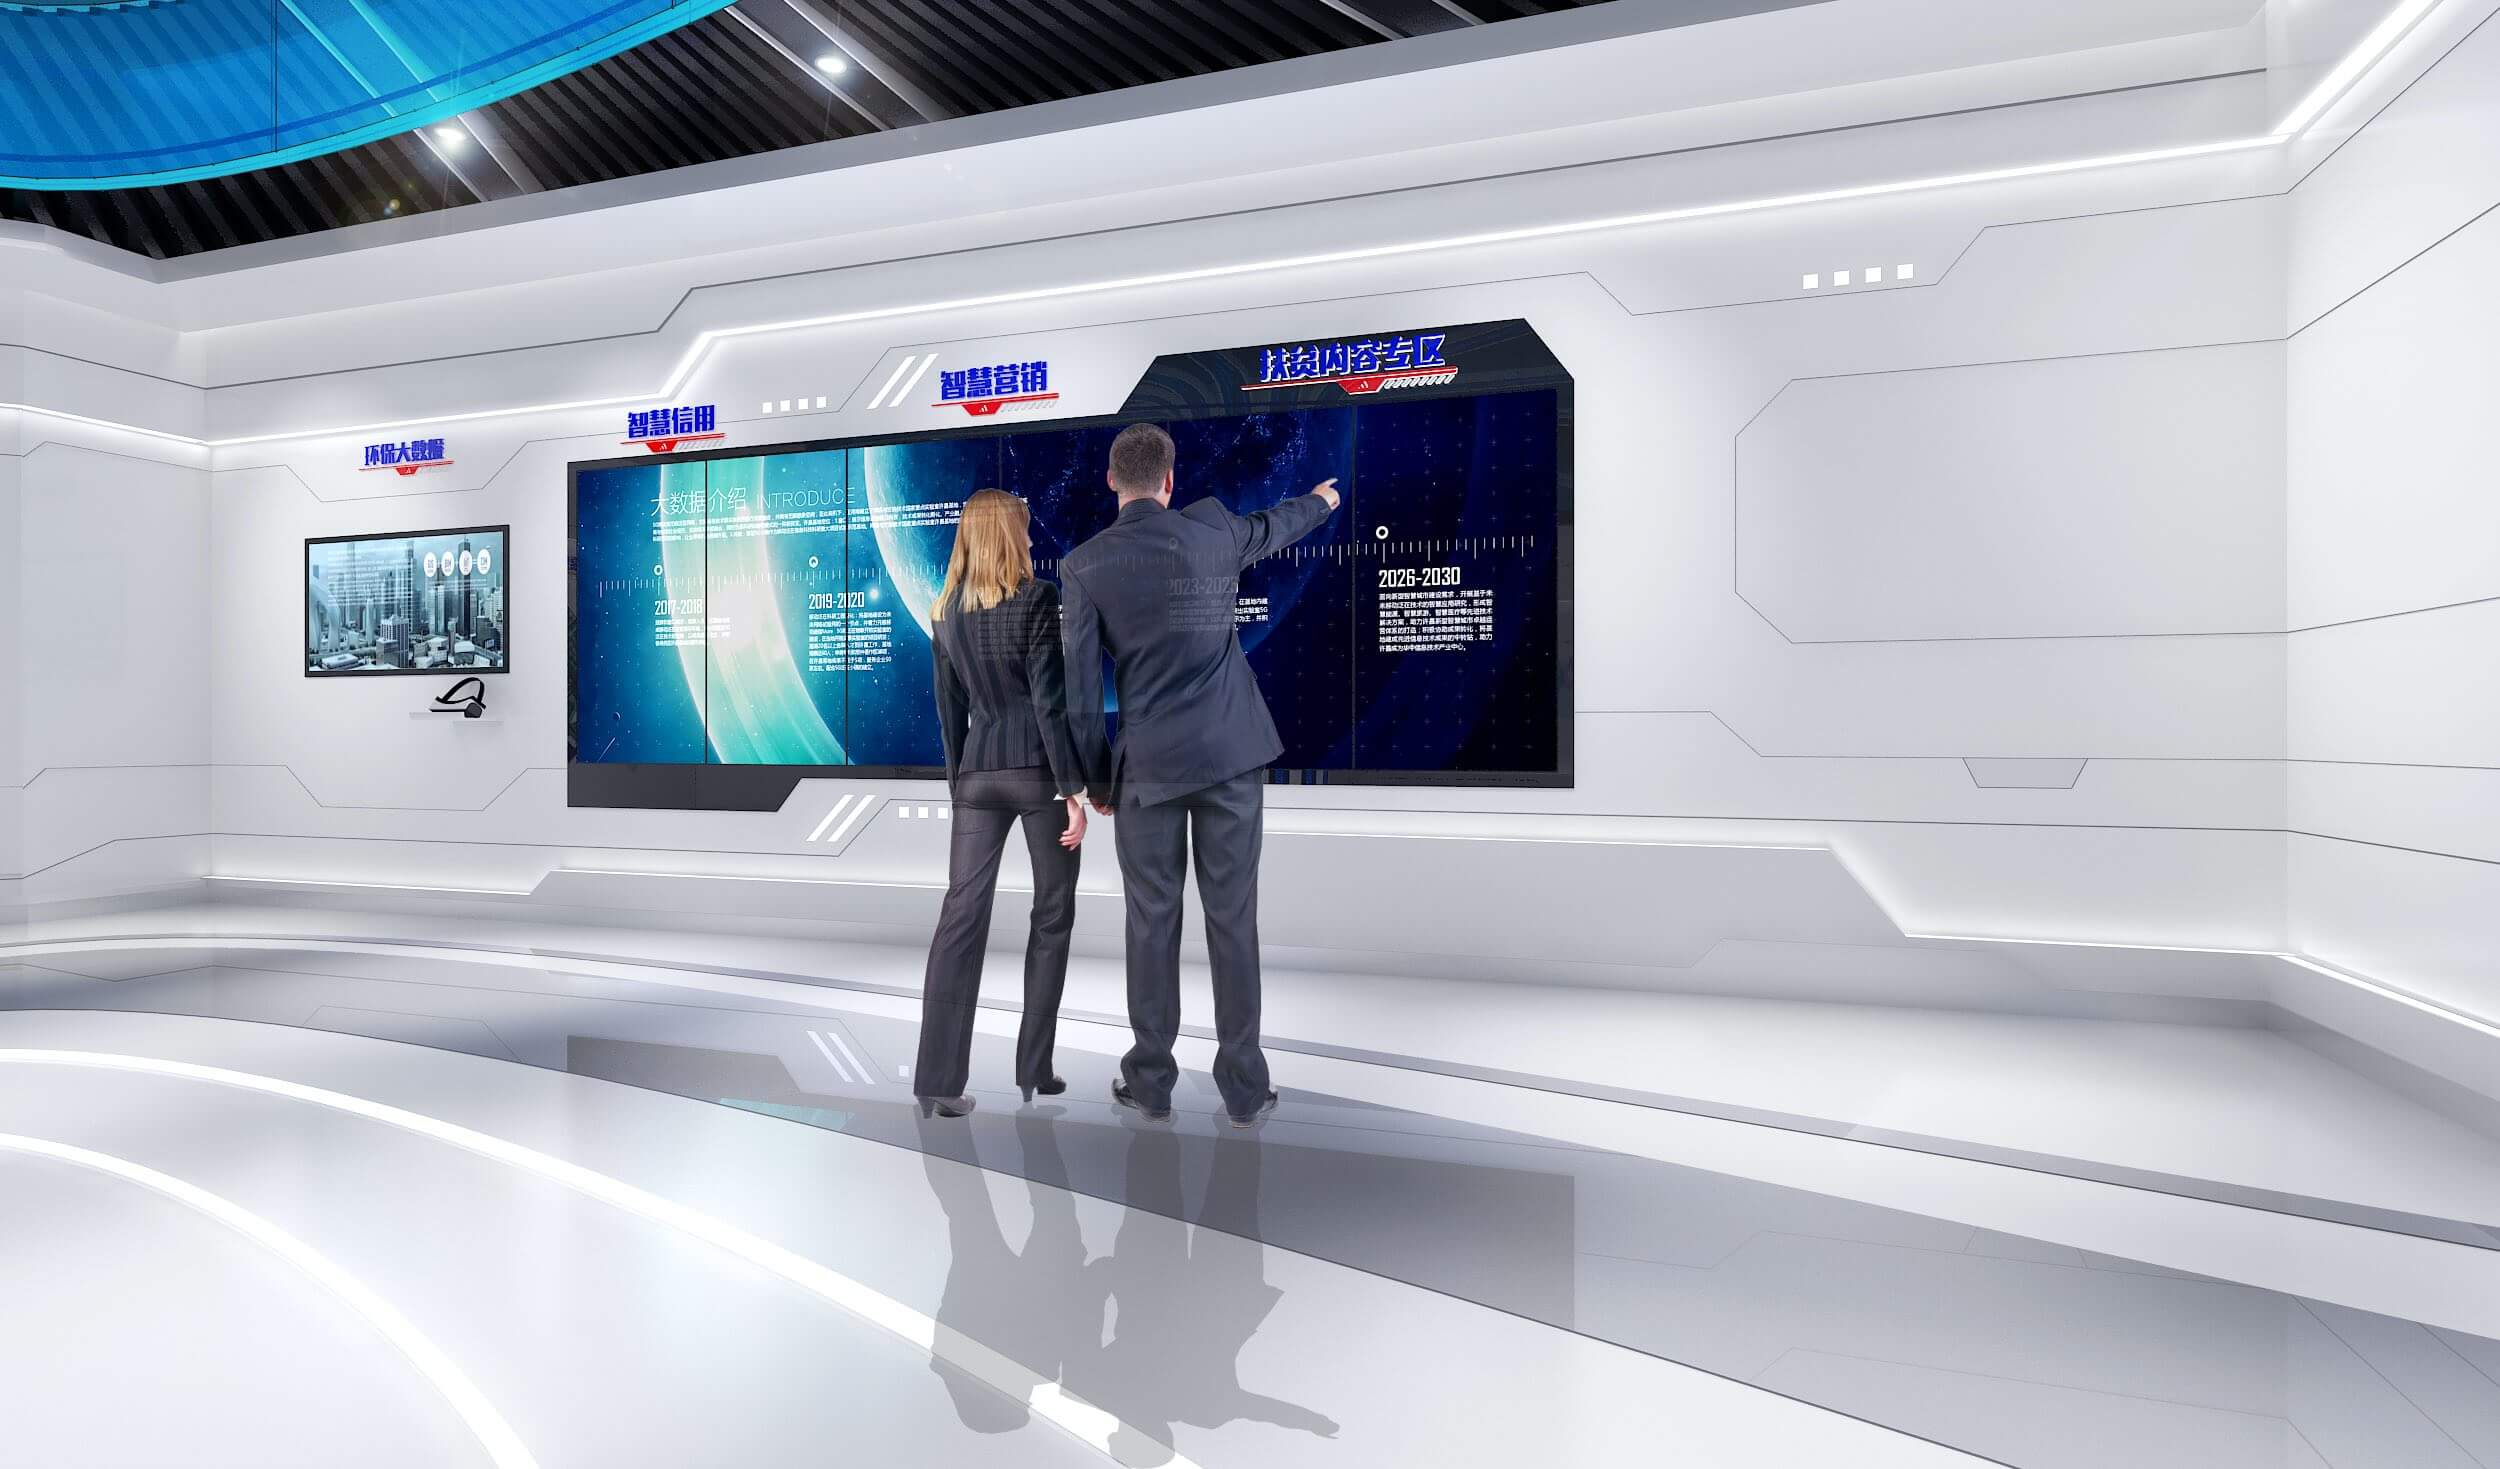 图片展示两位穿着正装的人站在一个高科技感的室内环境中，前方是一个巨大的屏幕，上面显示着数据和图表。